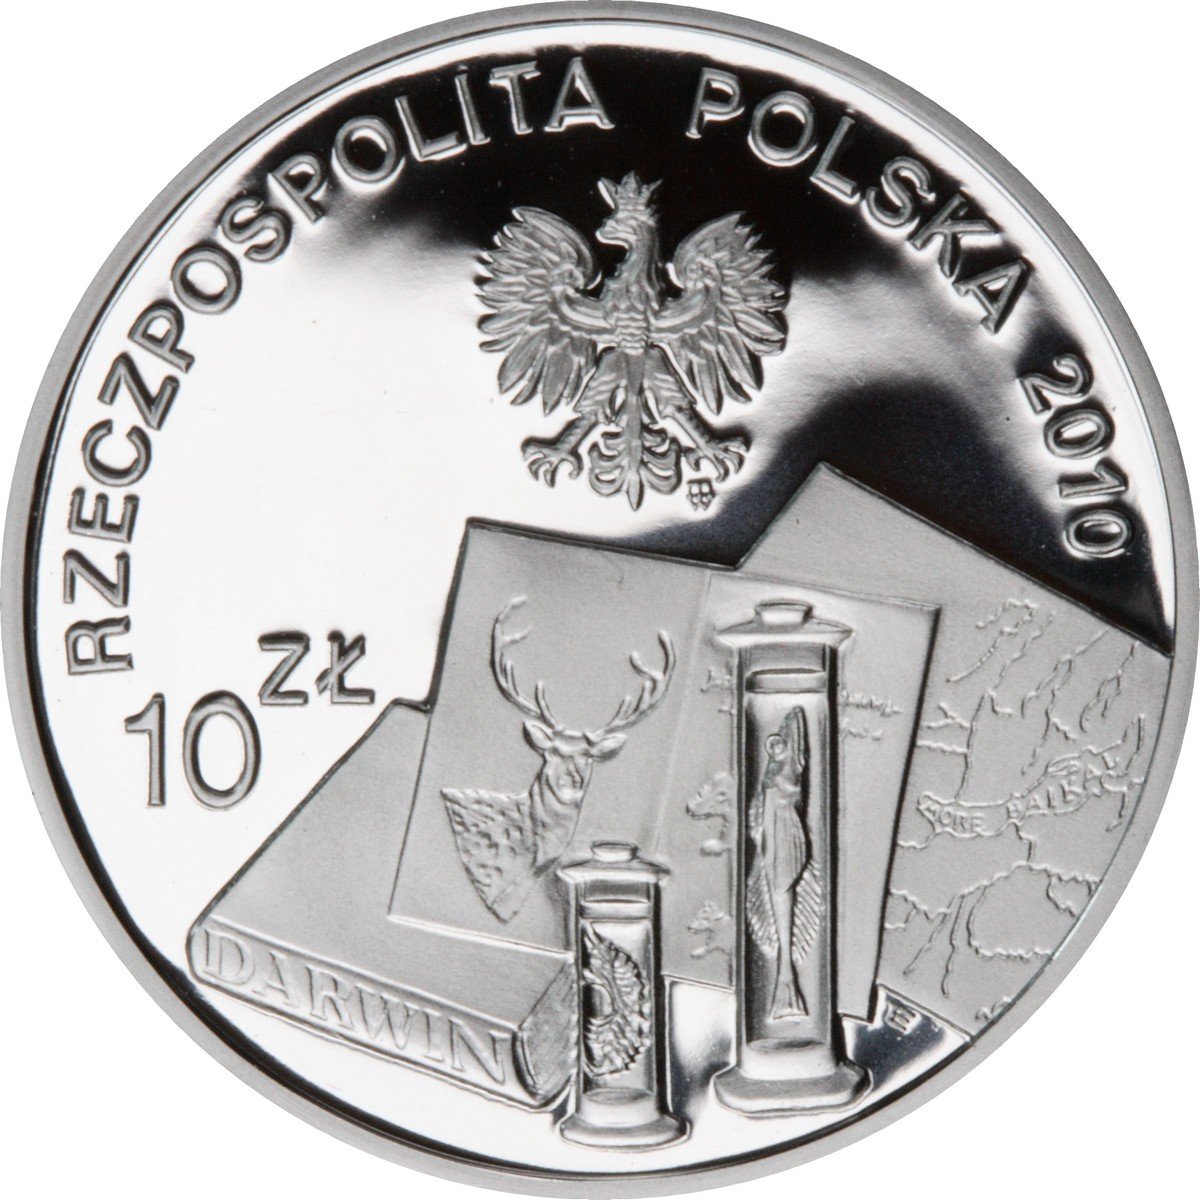 10zl-benedykt-dybowski-1833-1930-awers-monety